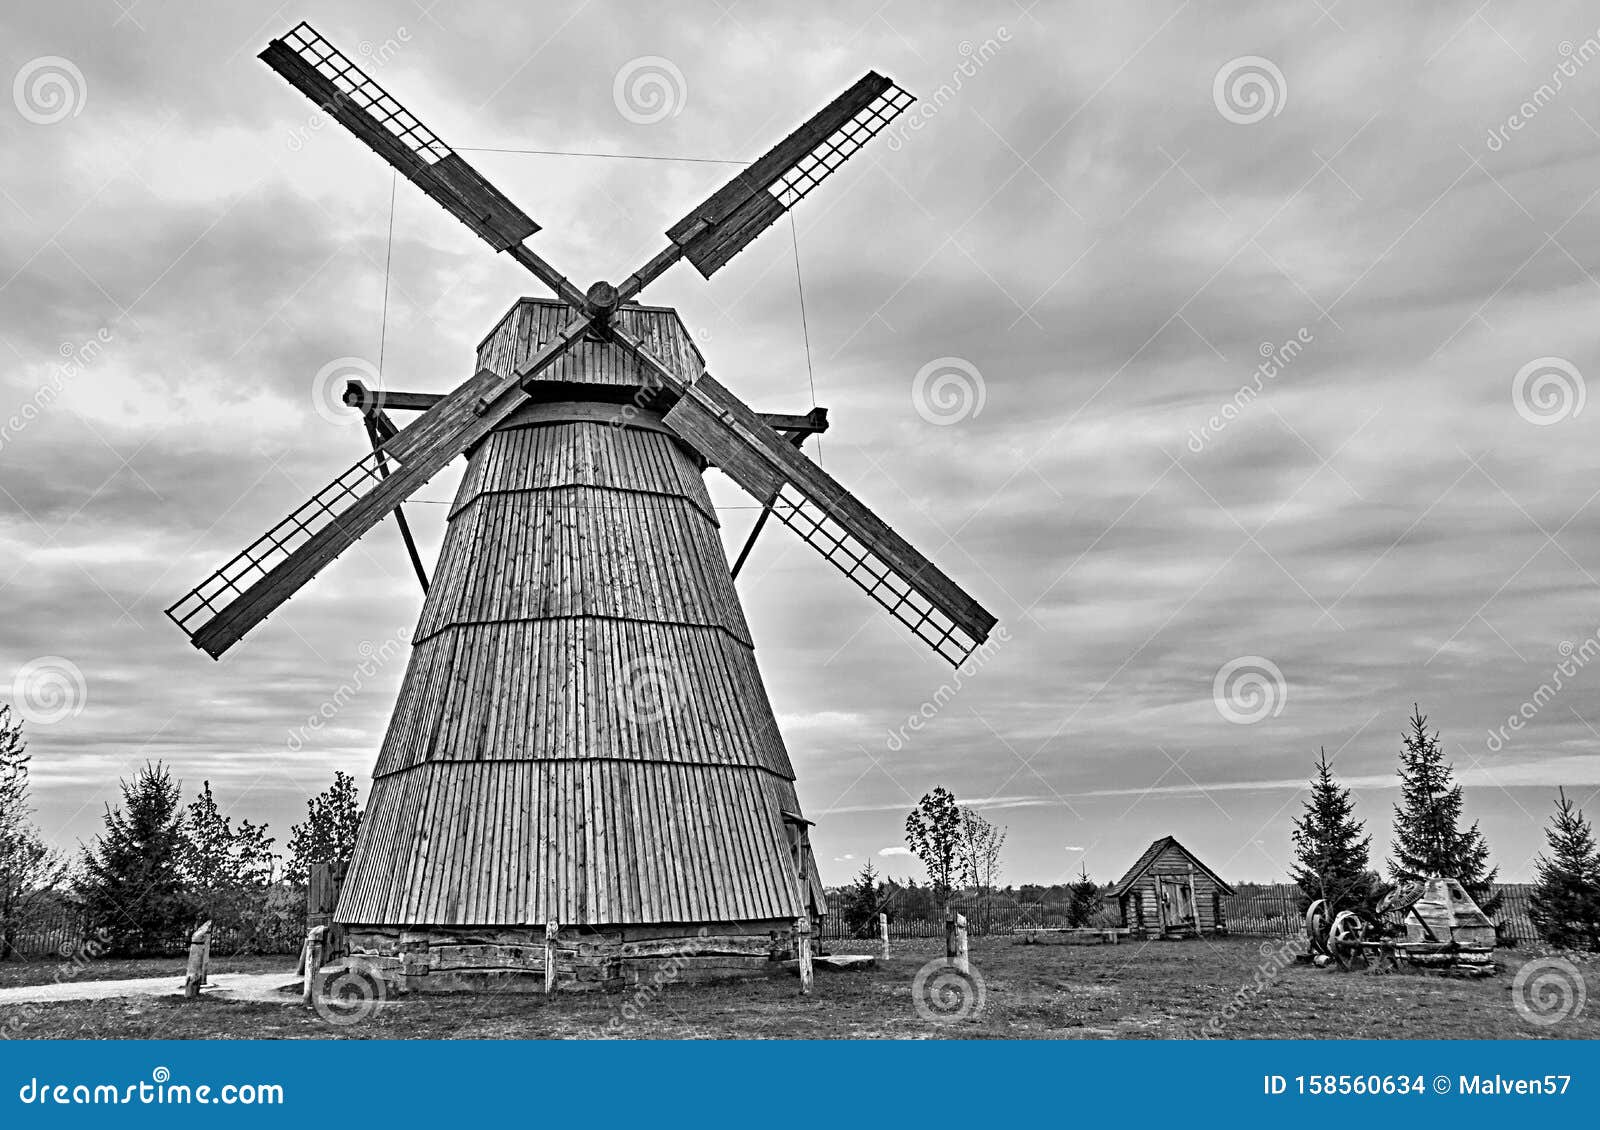 Moinho de vento antigo imagem de stock. Imagem de ninho - 74996737